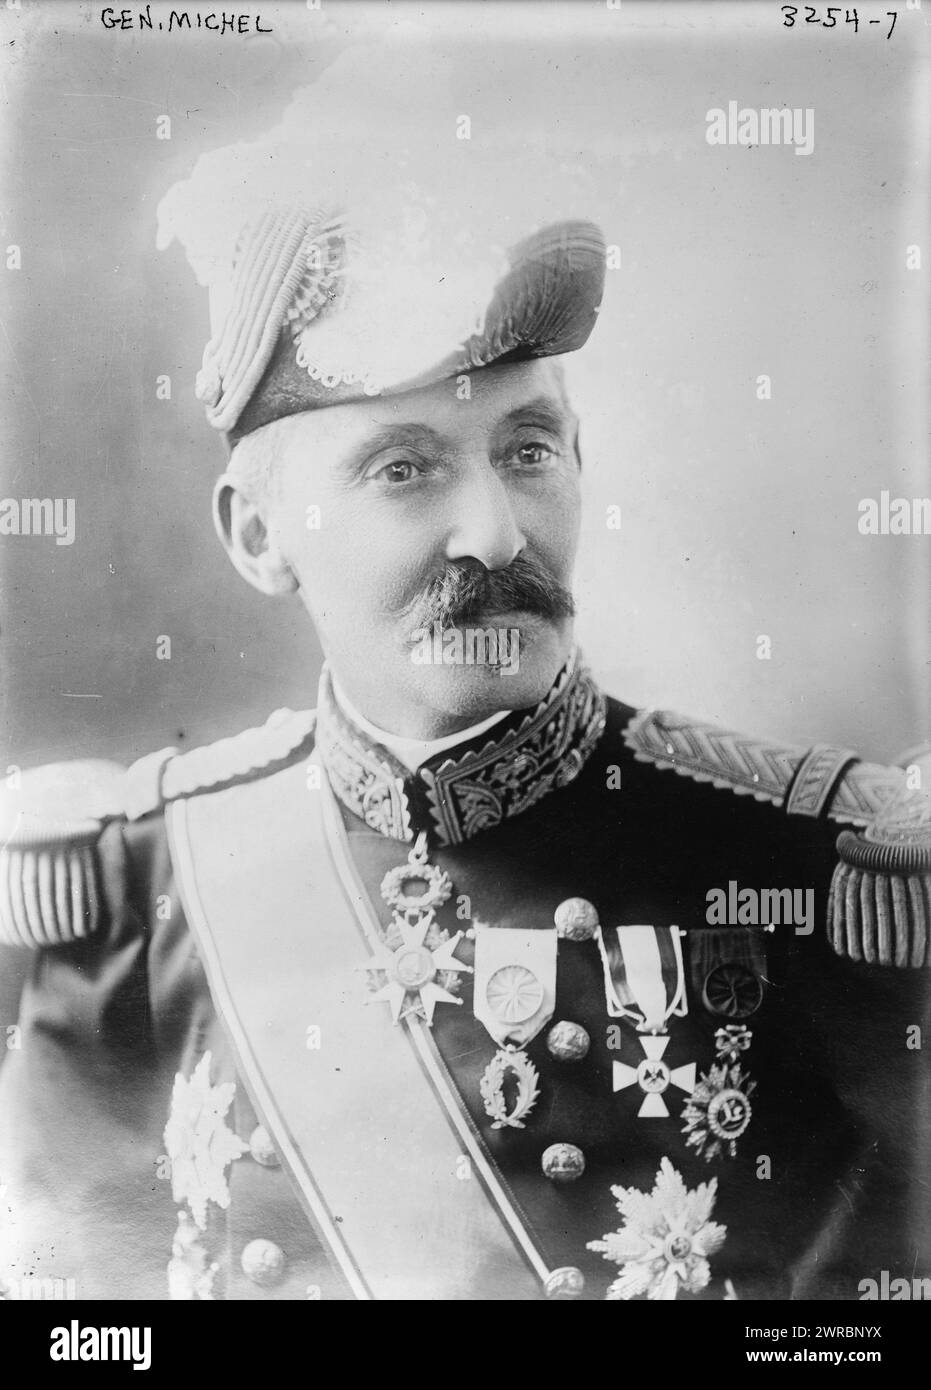 Gen. Michel, la fotografia mostra Victor Constant Michel (1850-1937), un generale francese che era comandante dell'esercito francese prima della prima guerra mondiale, Glass negative, 1 negative: Glass Foto Stock